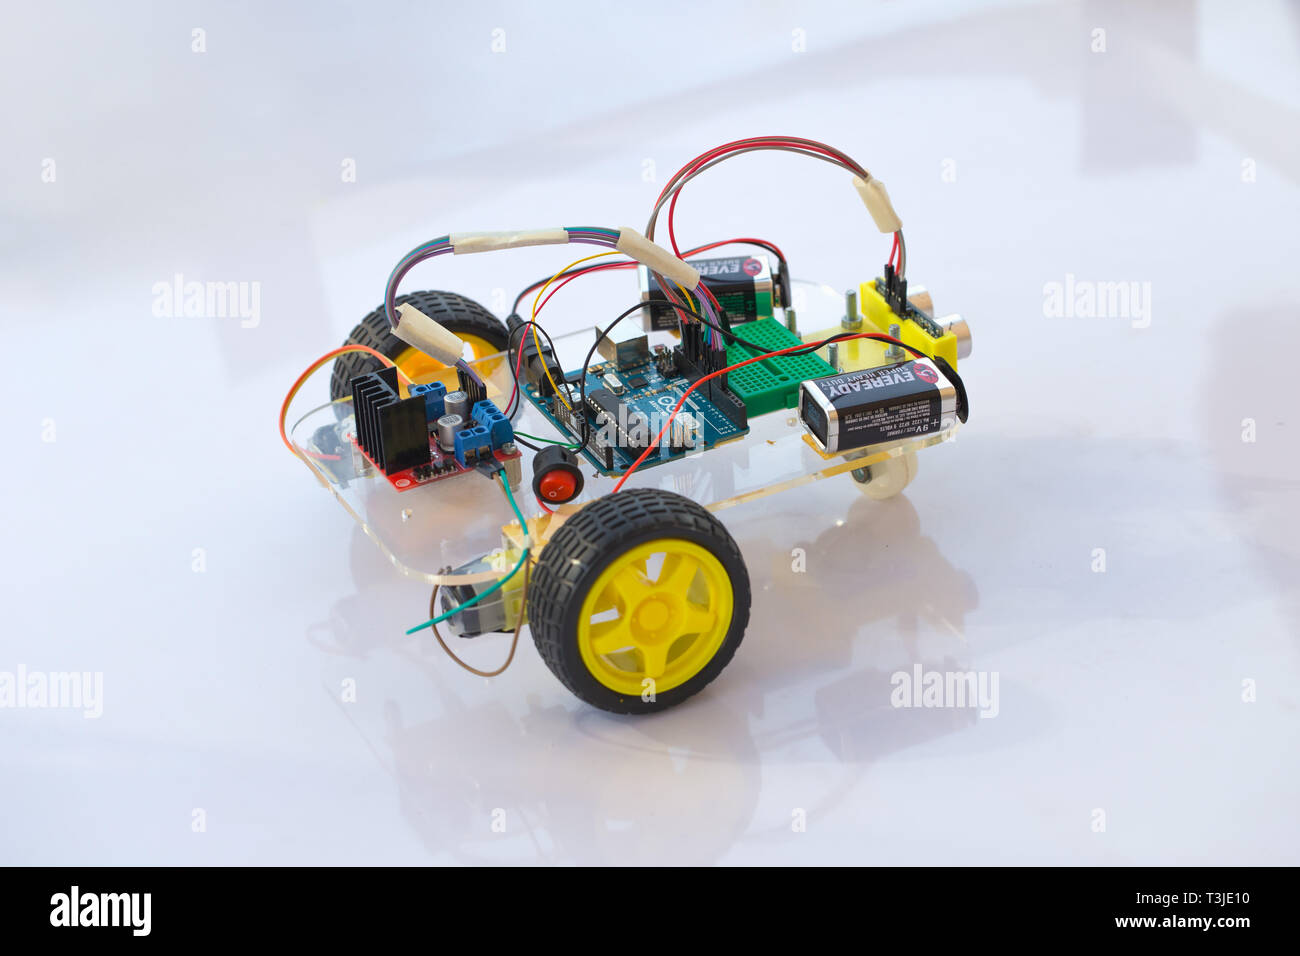 Electornic robot voiture module kit micro contrôleur de circuit de l'open source pour le matériel d'éducation pour enfants future.20 janvier 2018, Bangkok, Thaïlande. Banque D'Images